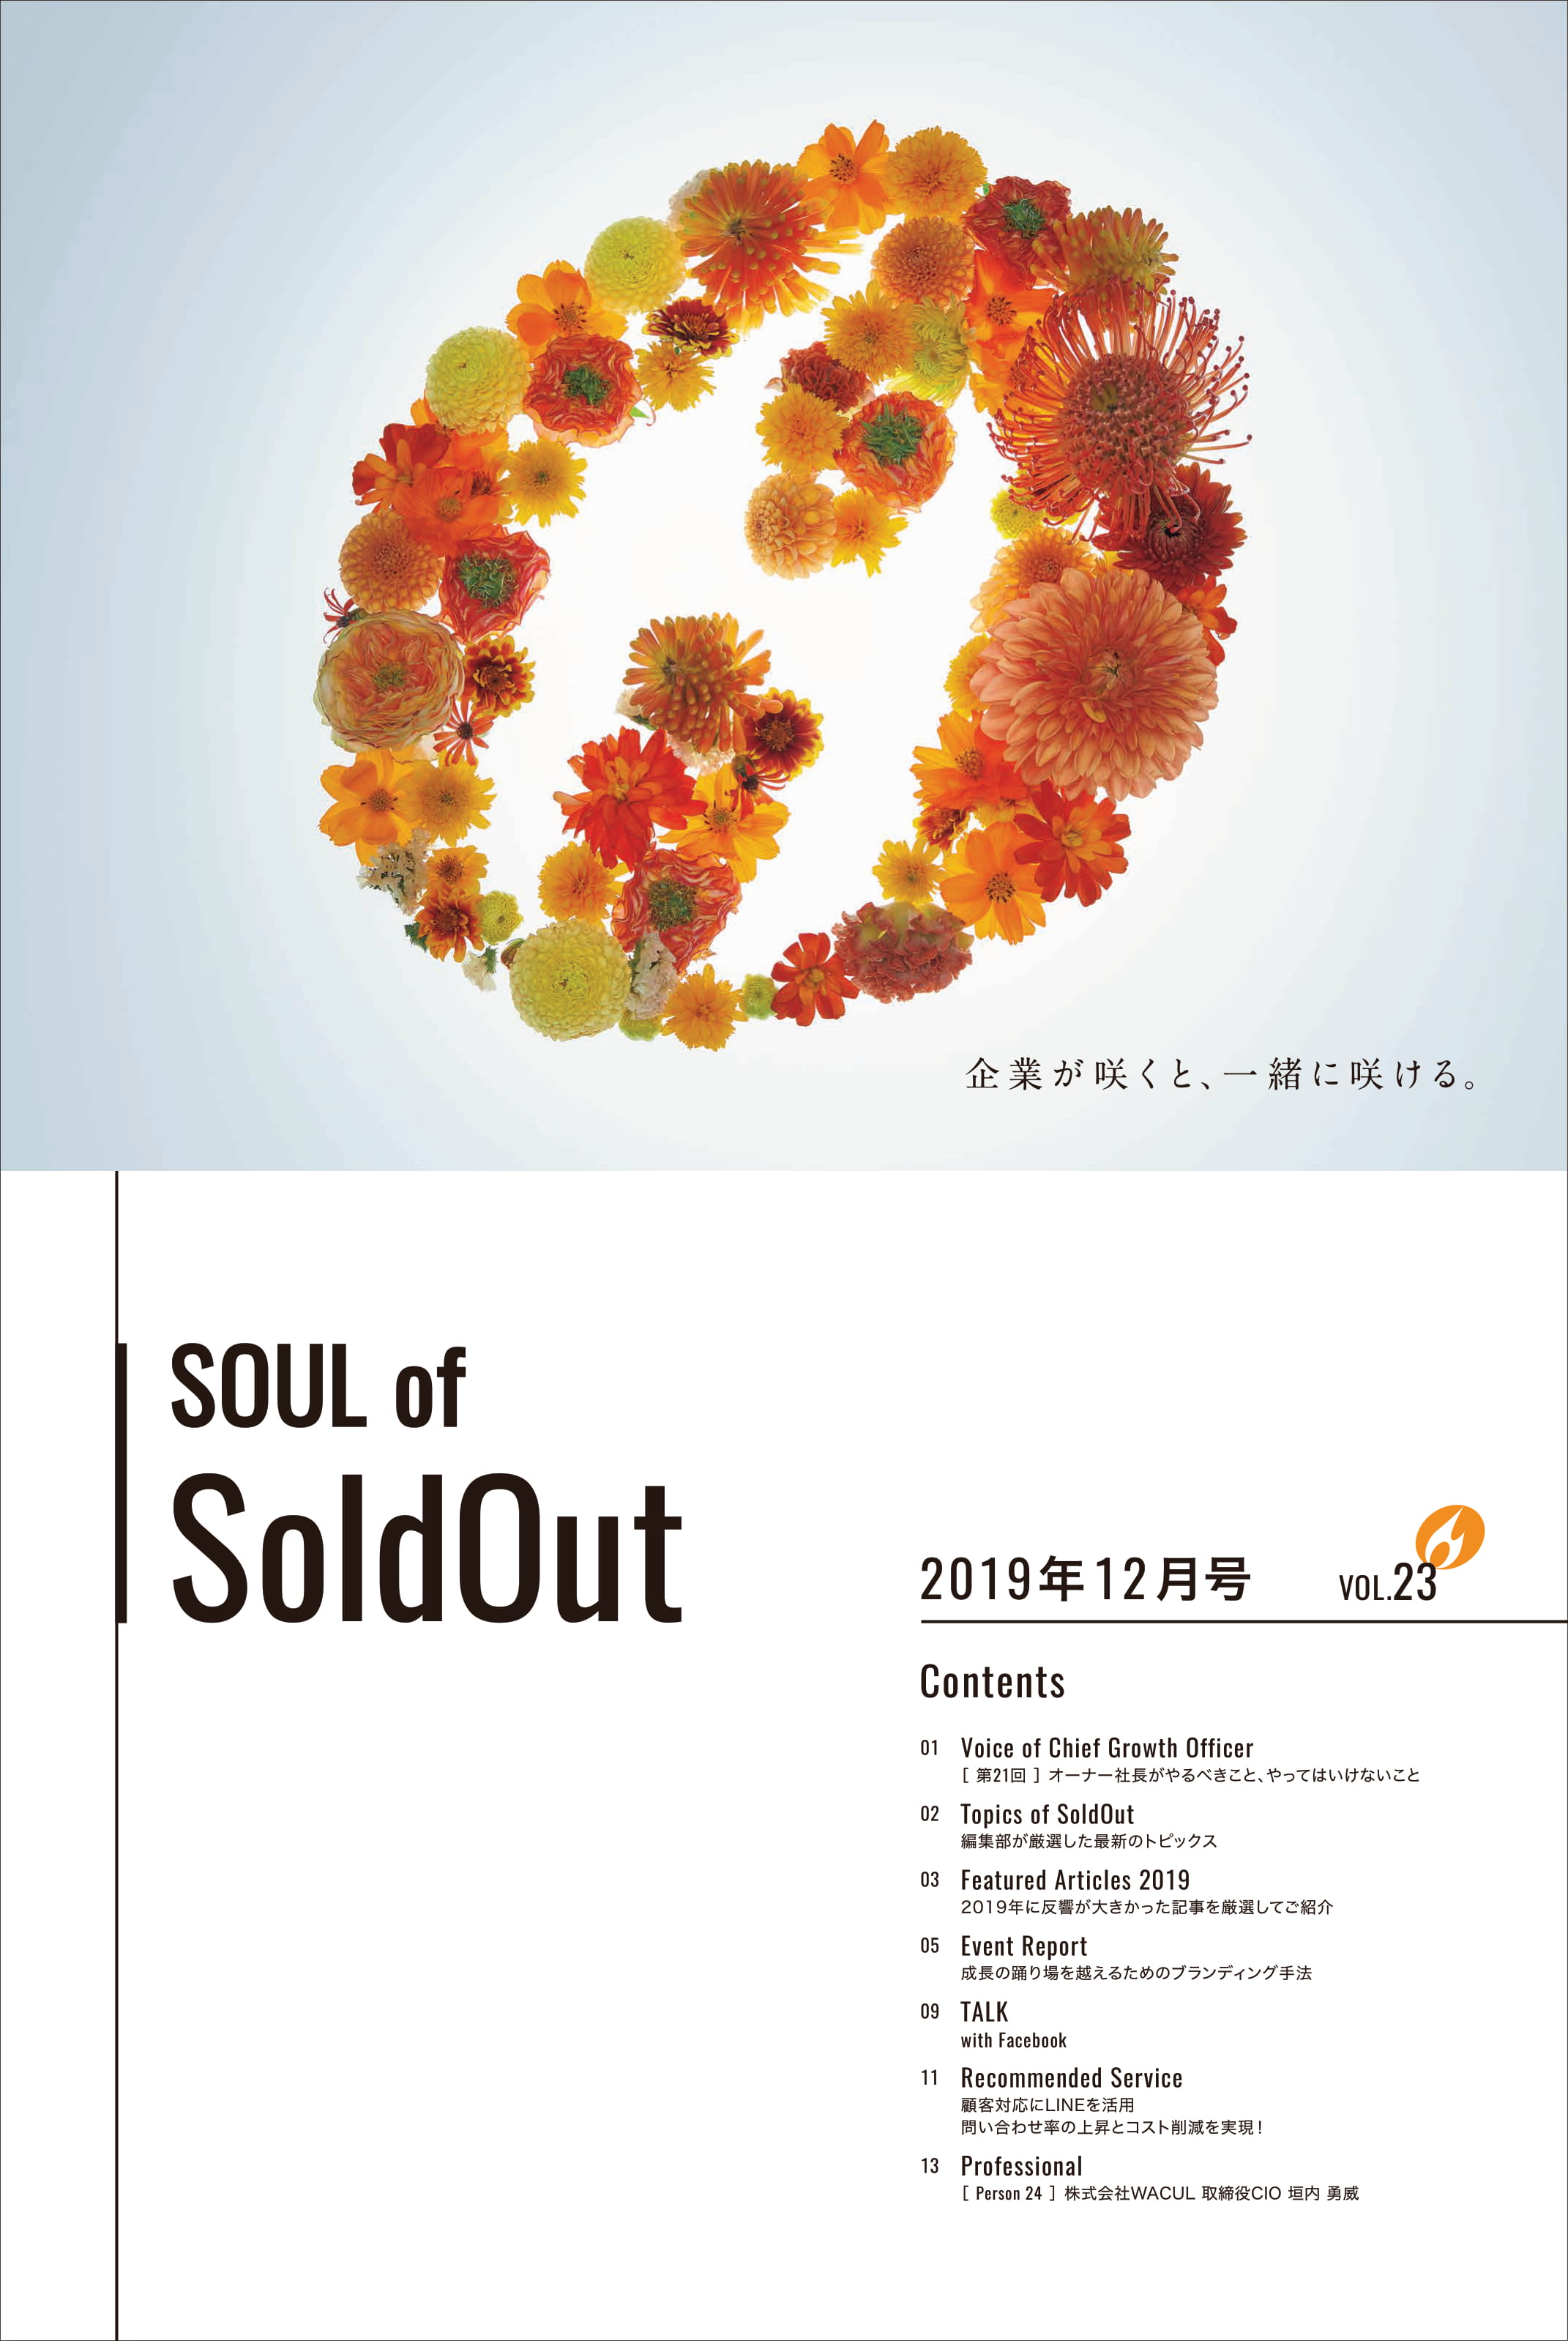 マンスリージャーナル Soul Of Soldout 19年12月号を発行 ソウルドアウト